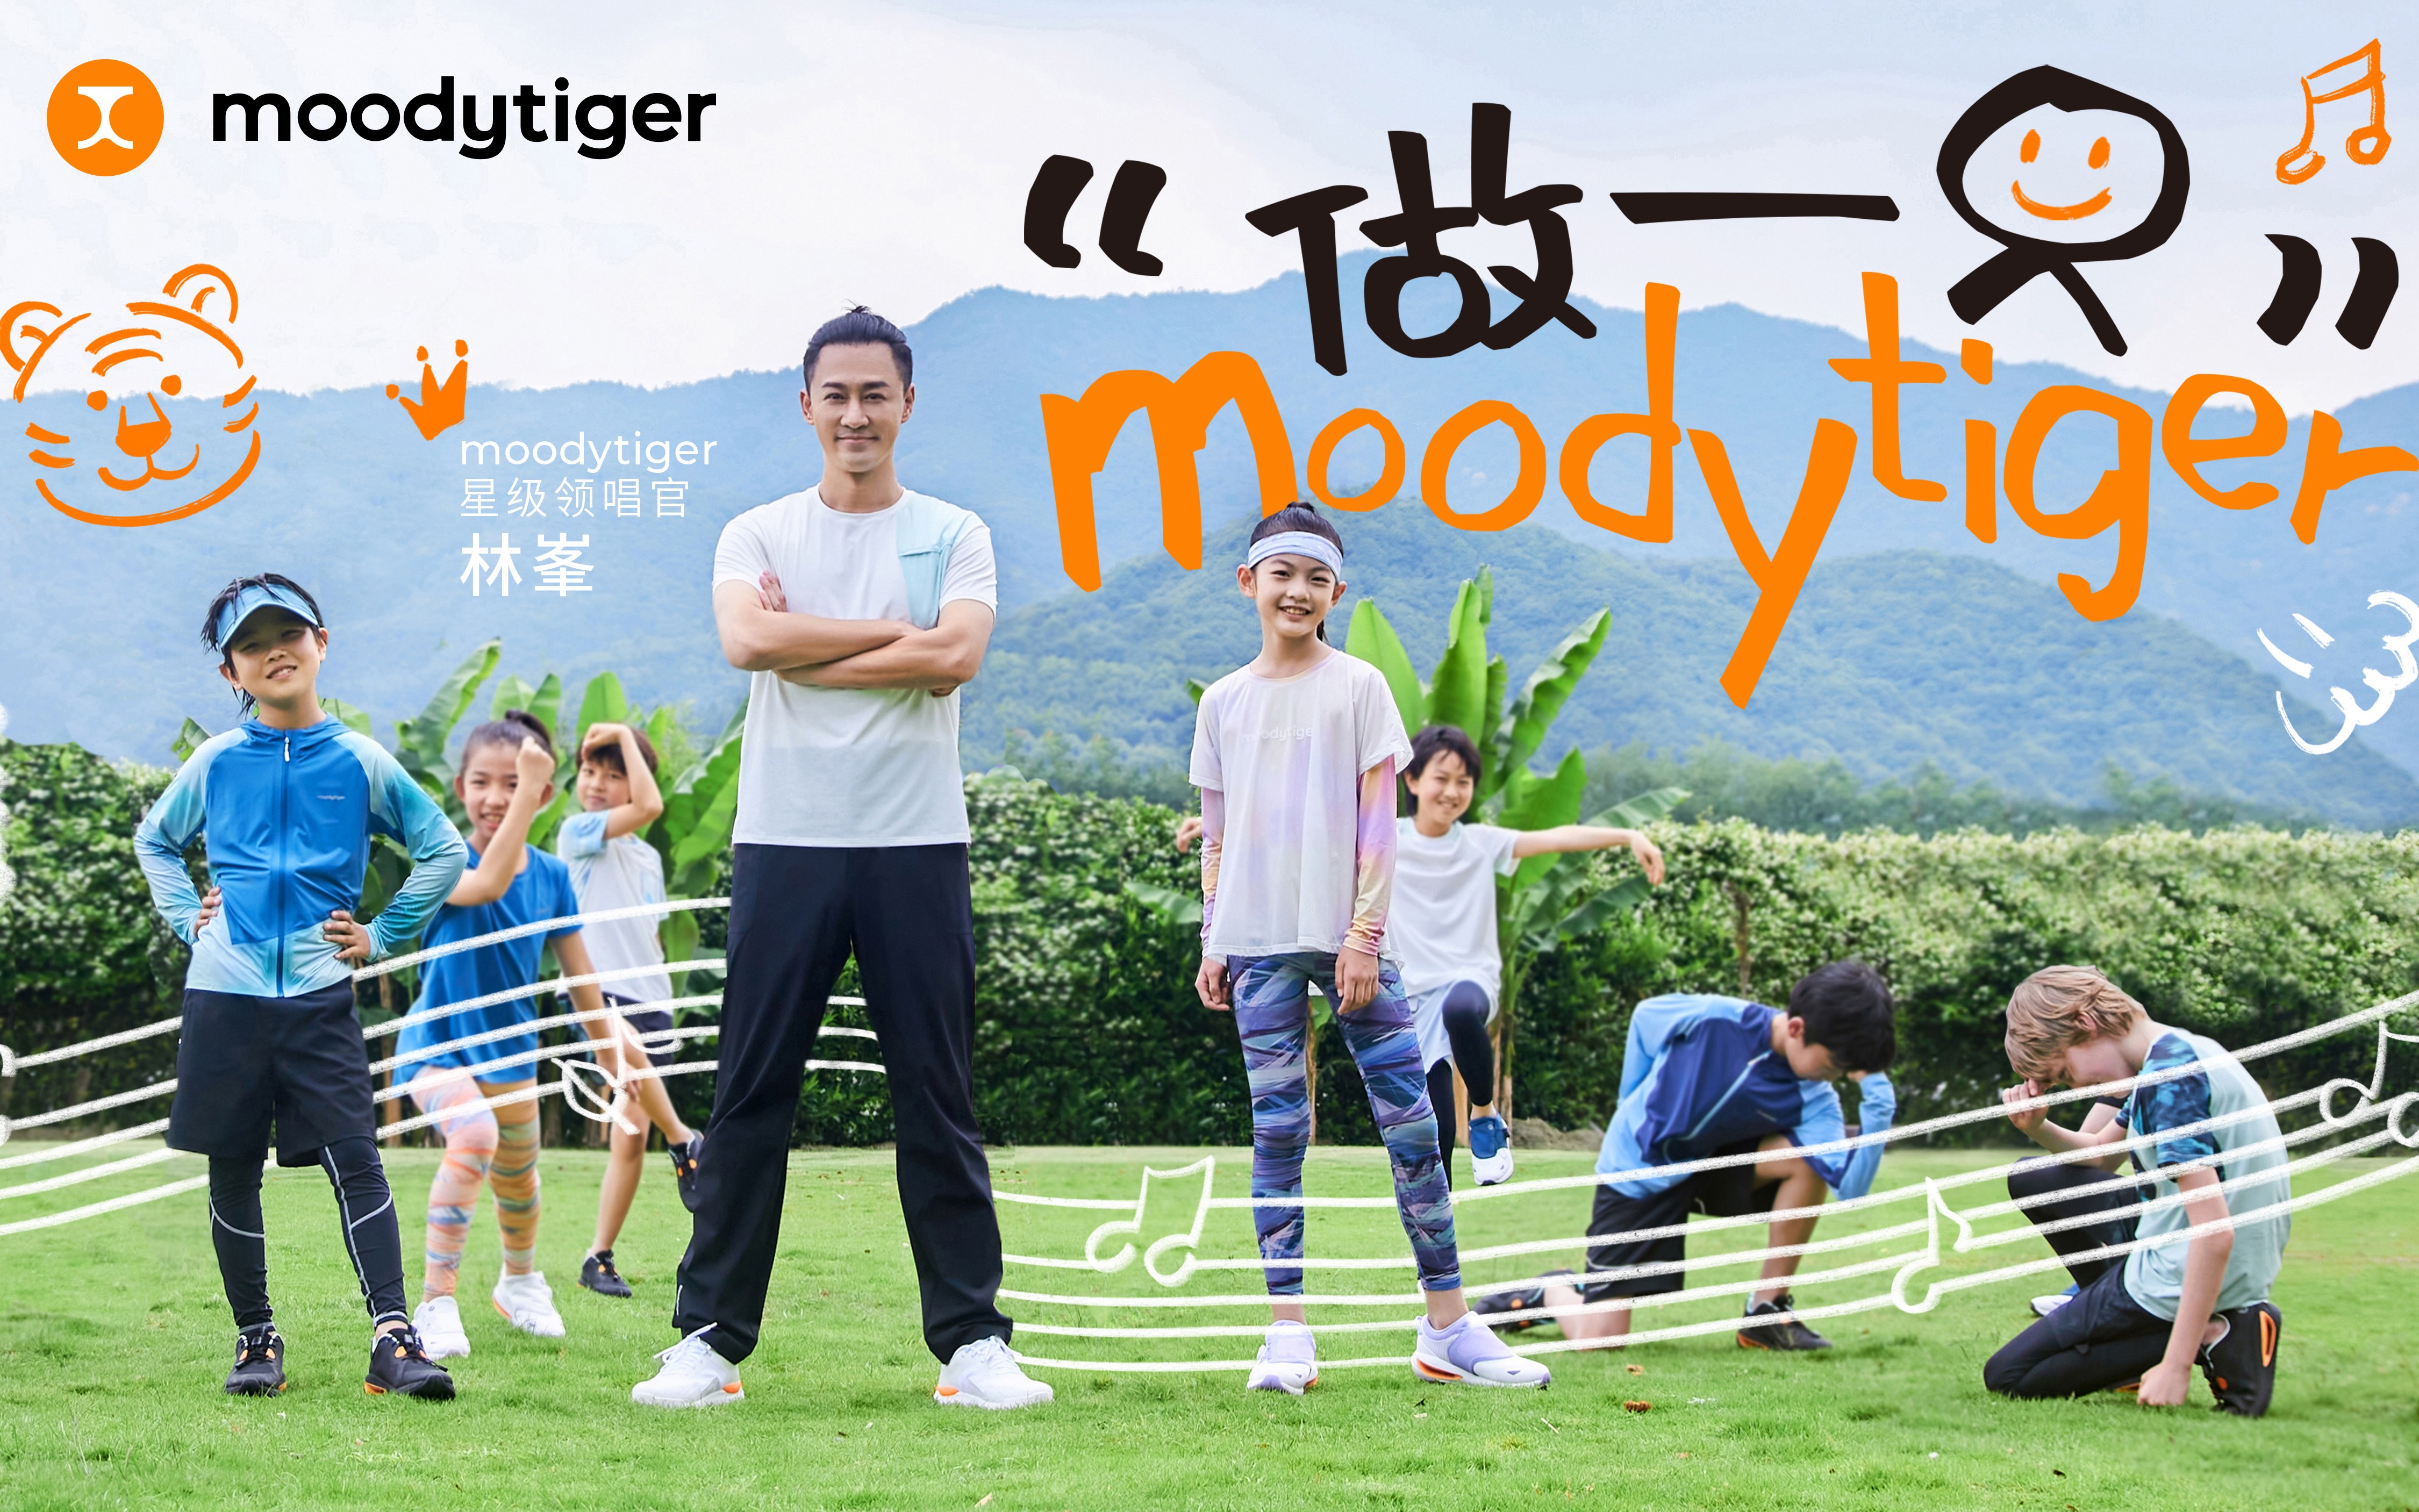 儿童运动品牌 moodytiger 携手林峯在六一献唱新儿歌